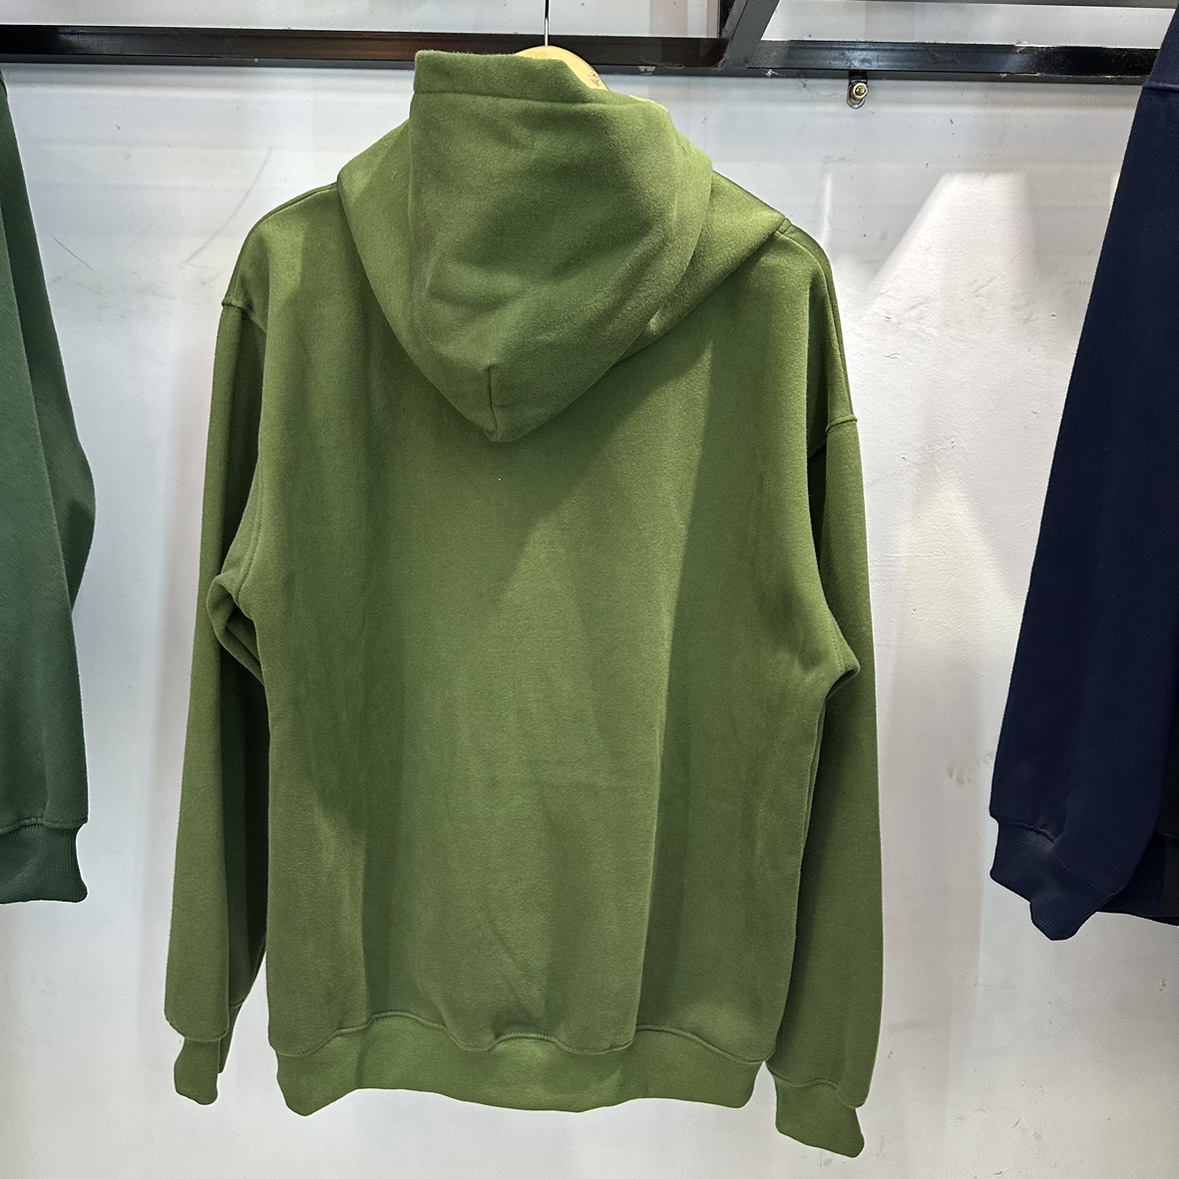 Prawdziwe zdjęcia XL Zielona bawełniana bluzę męską męskie bluzy wysokiej jakości pullover